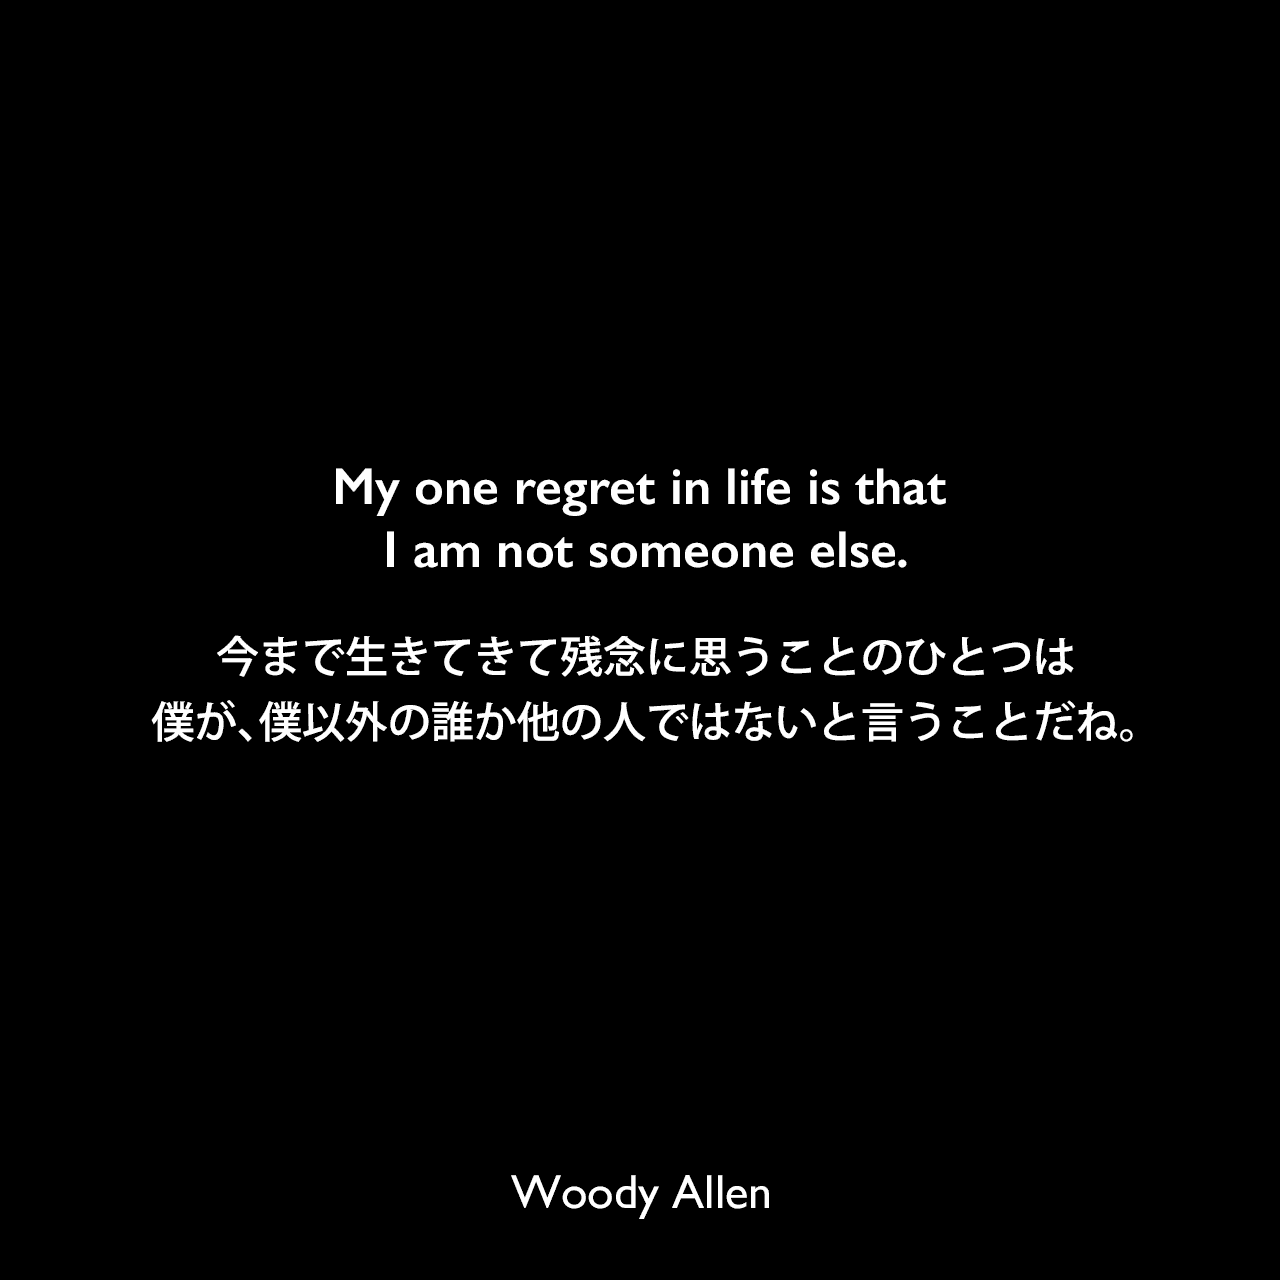 My one regret in life is that I am not someone else.今まで生きてきて残念に思うことのひとつは、僕が、僕以外の誰か他の人ではないと言うことだね。Woody Allen